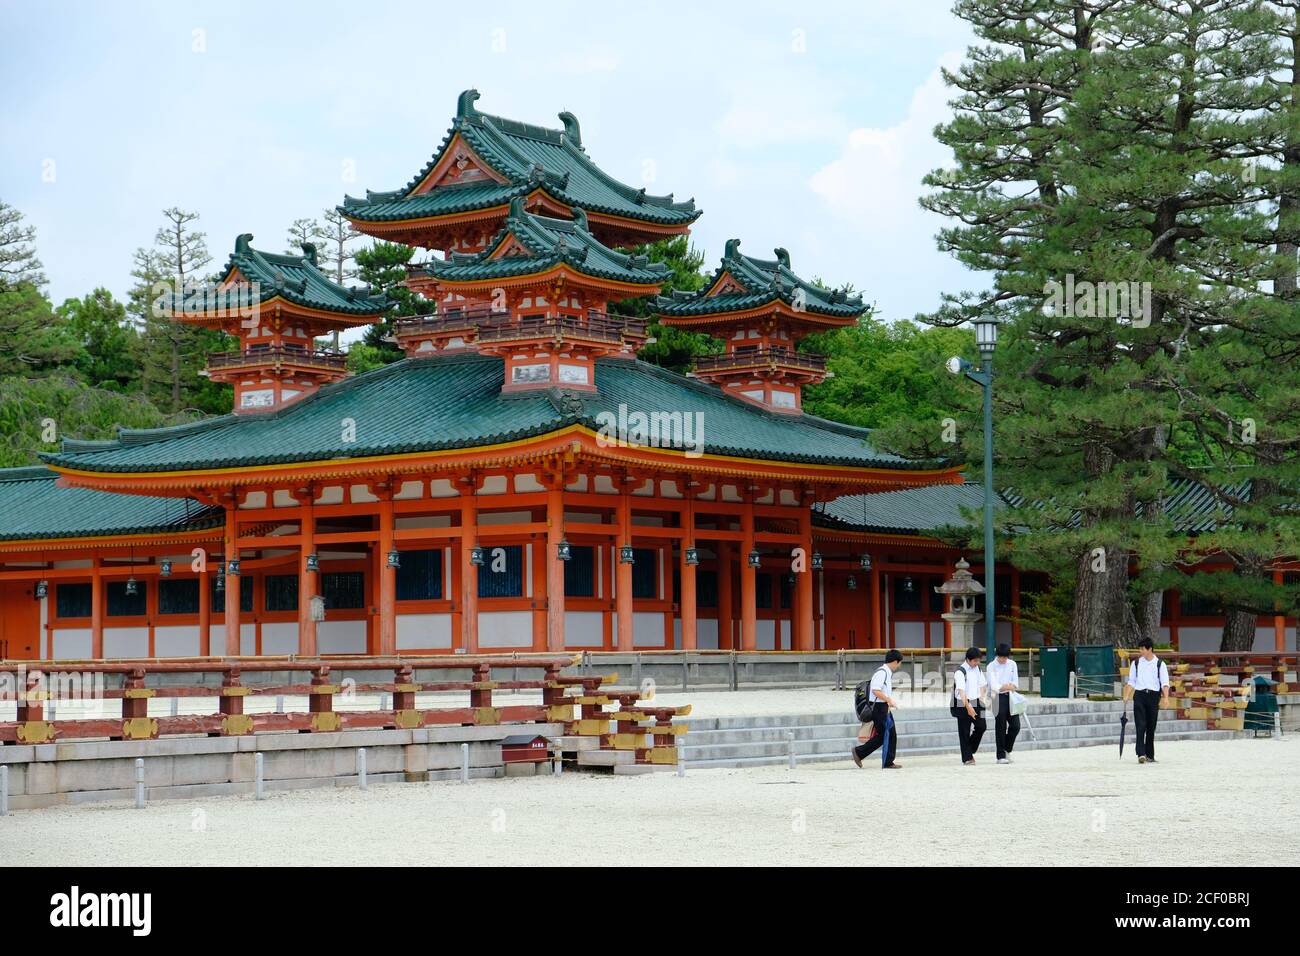 Kyoto Japan - Shinto Shrine Heian Shrine area Stock Photo